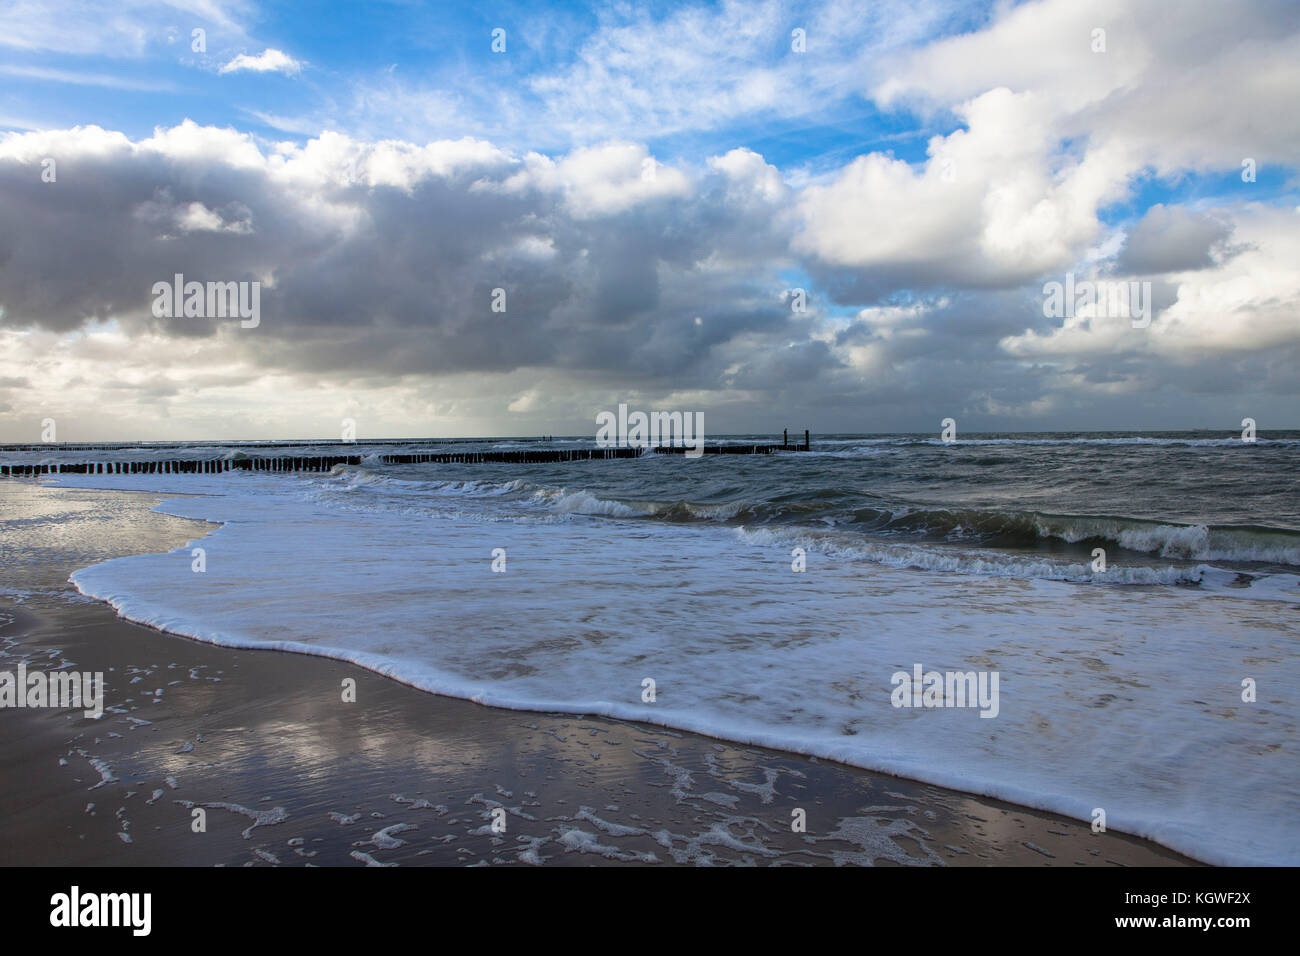 Pays-Bas, Zeeland, à la plage entre Oostkapelle et Domburg sur la péninsule de Walcheren, groins. Niederlande, Zeeland, Am Strand zwischen Oostk Banque D'Images